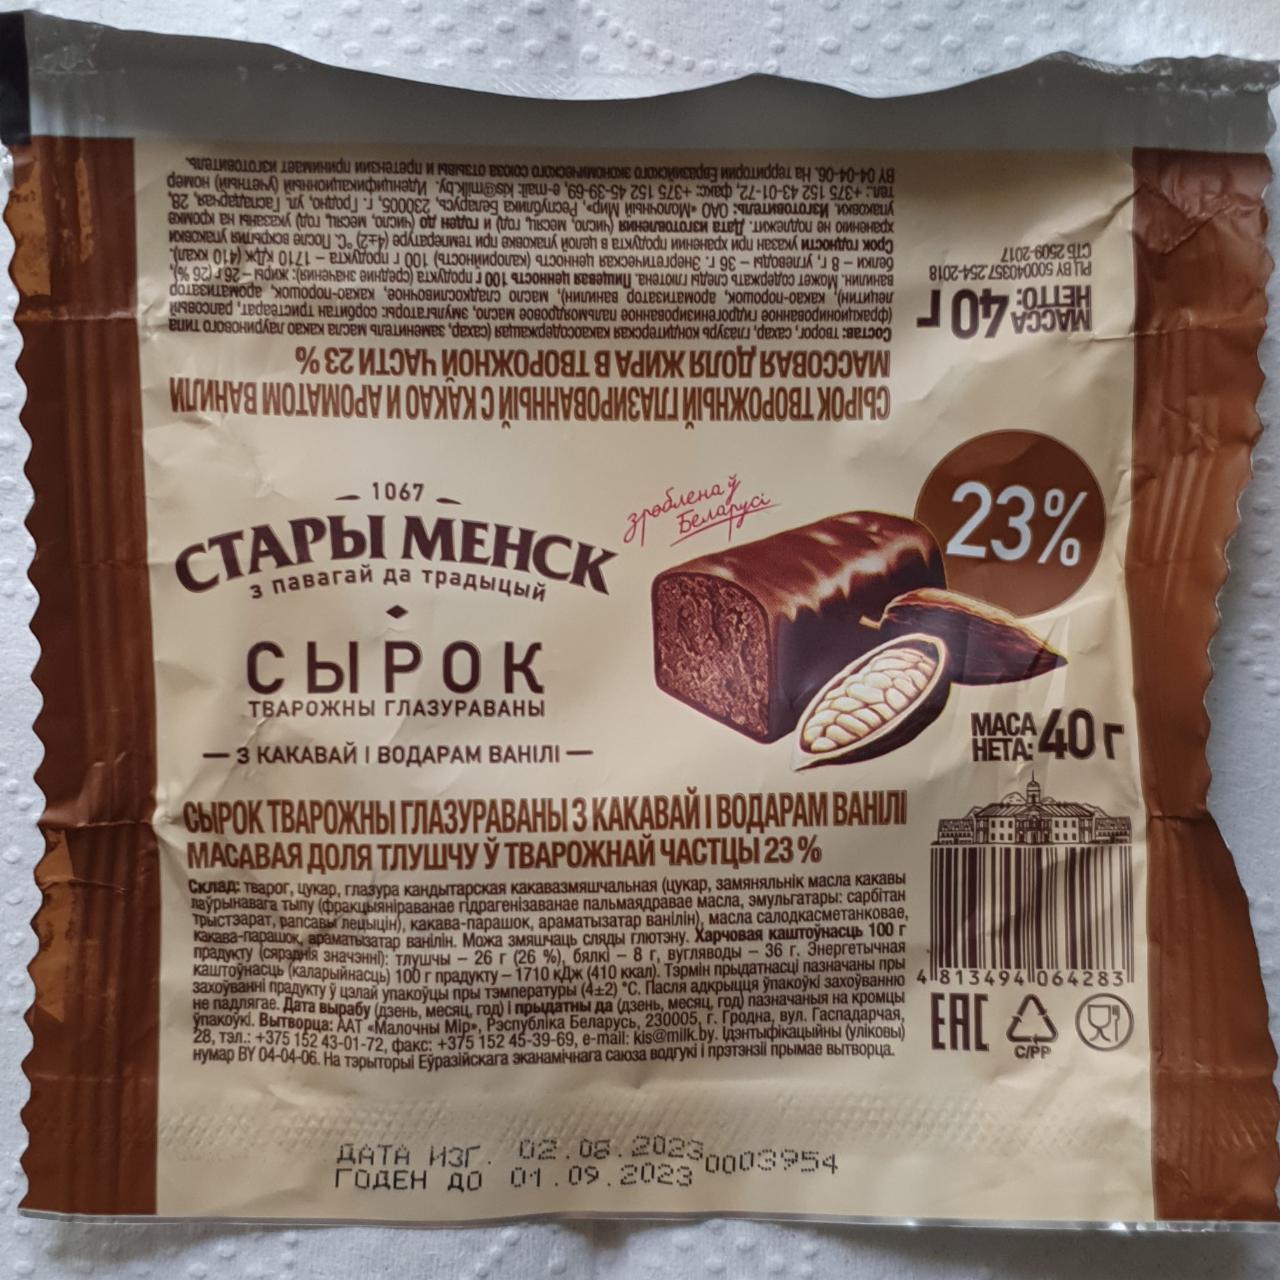 Фото - Сырок творожный глазированный с какао и ароматом ванили Стары Менск